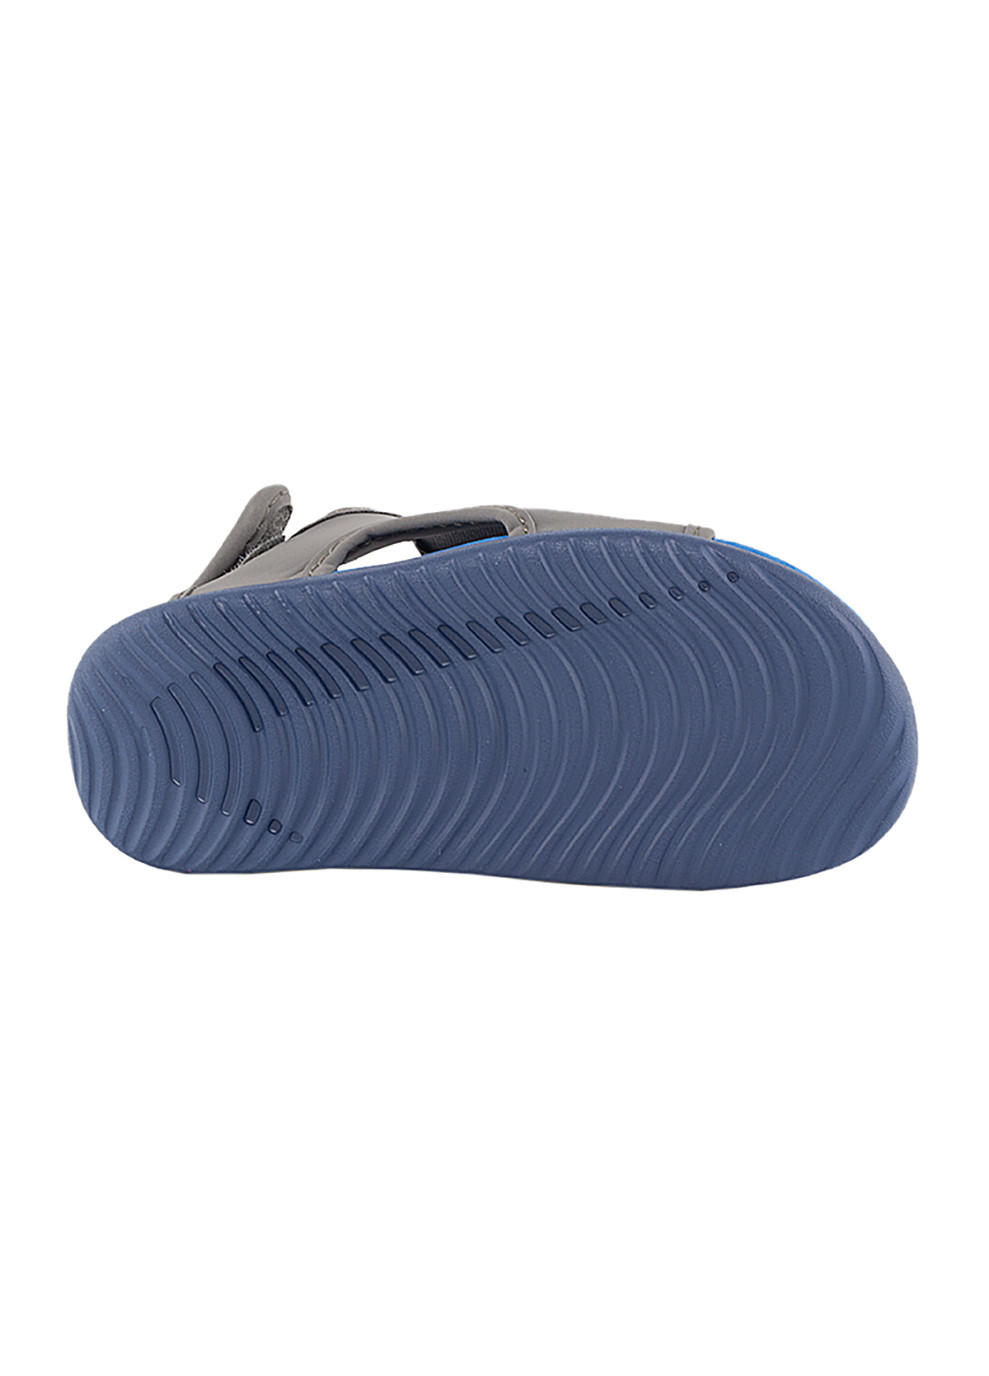 Серые кэжуал детские сандали (босоножки) sunray adjust 5 v2 (td) серый Nike